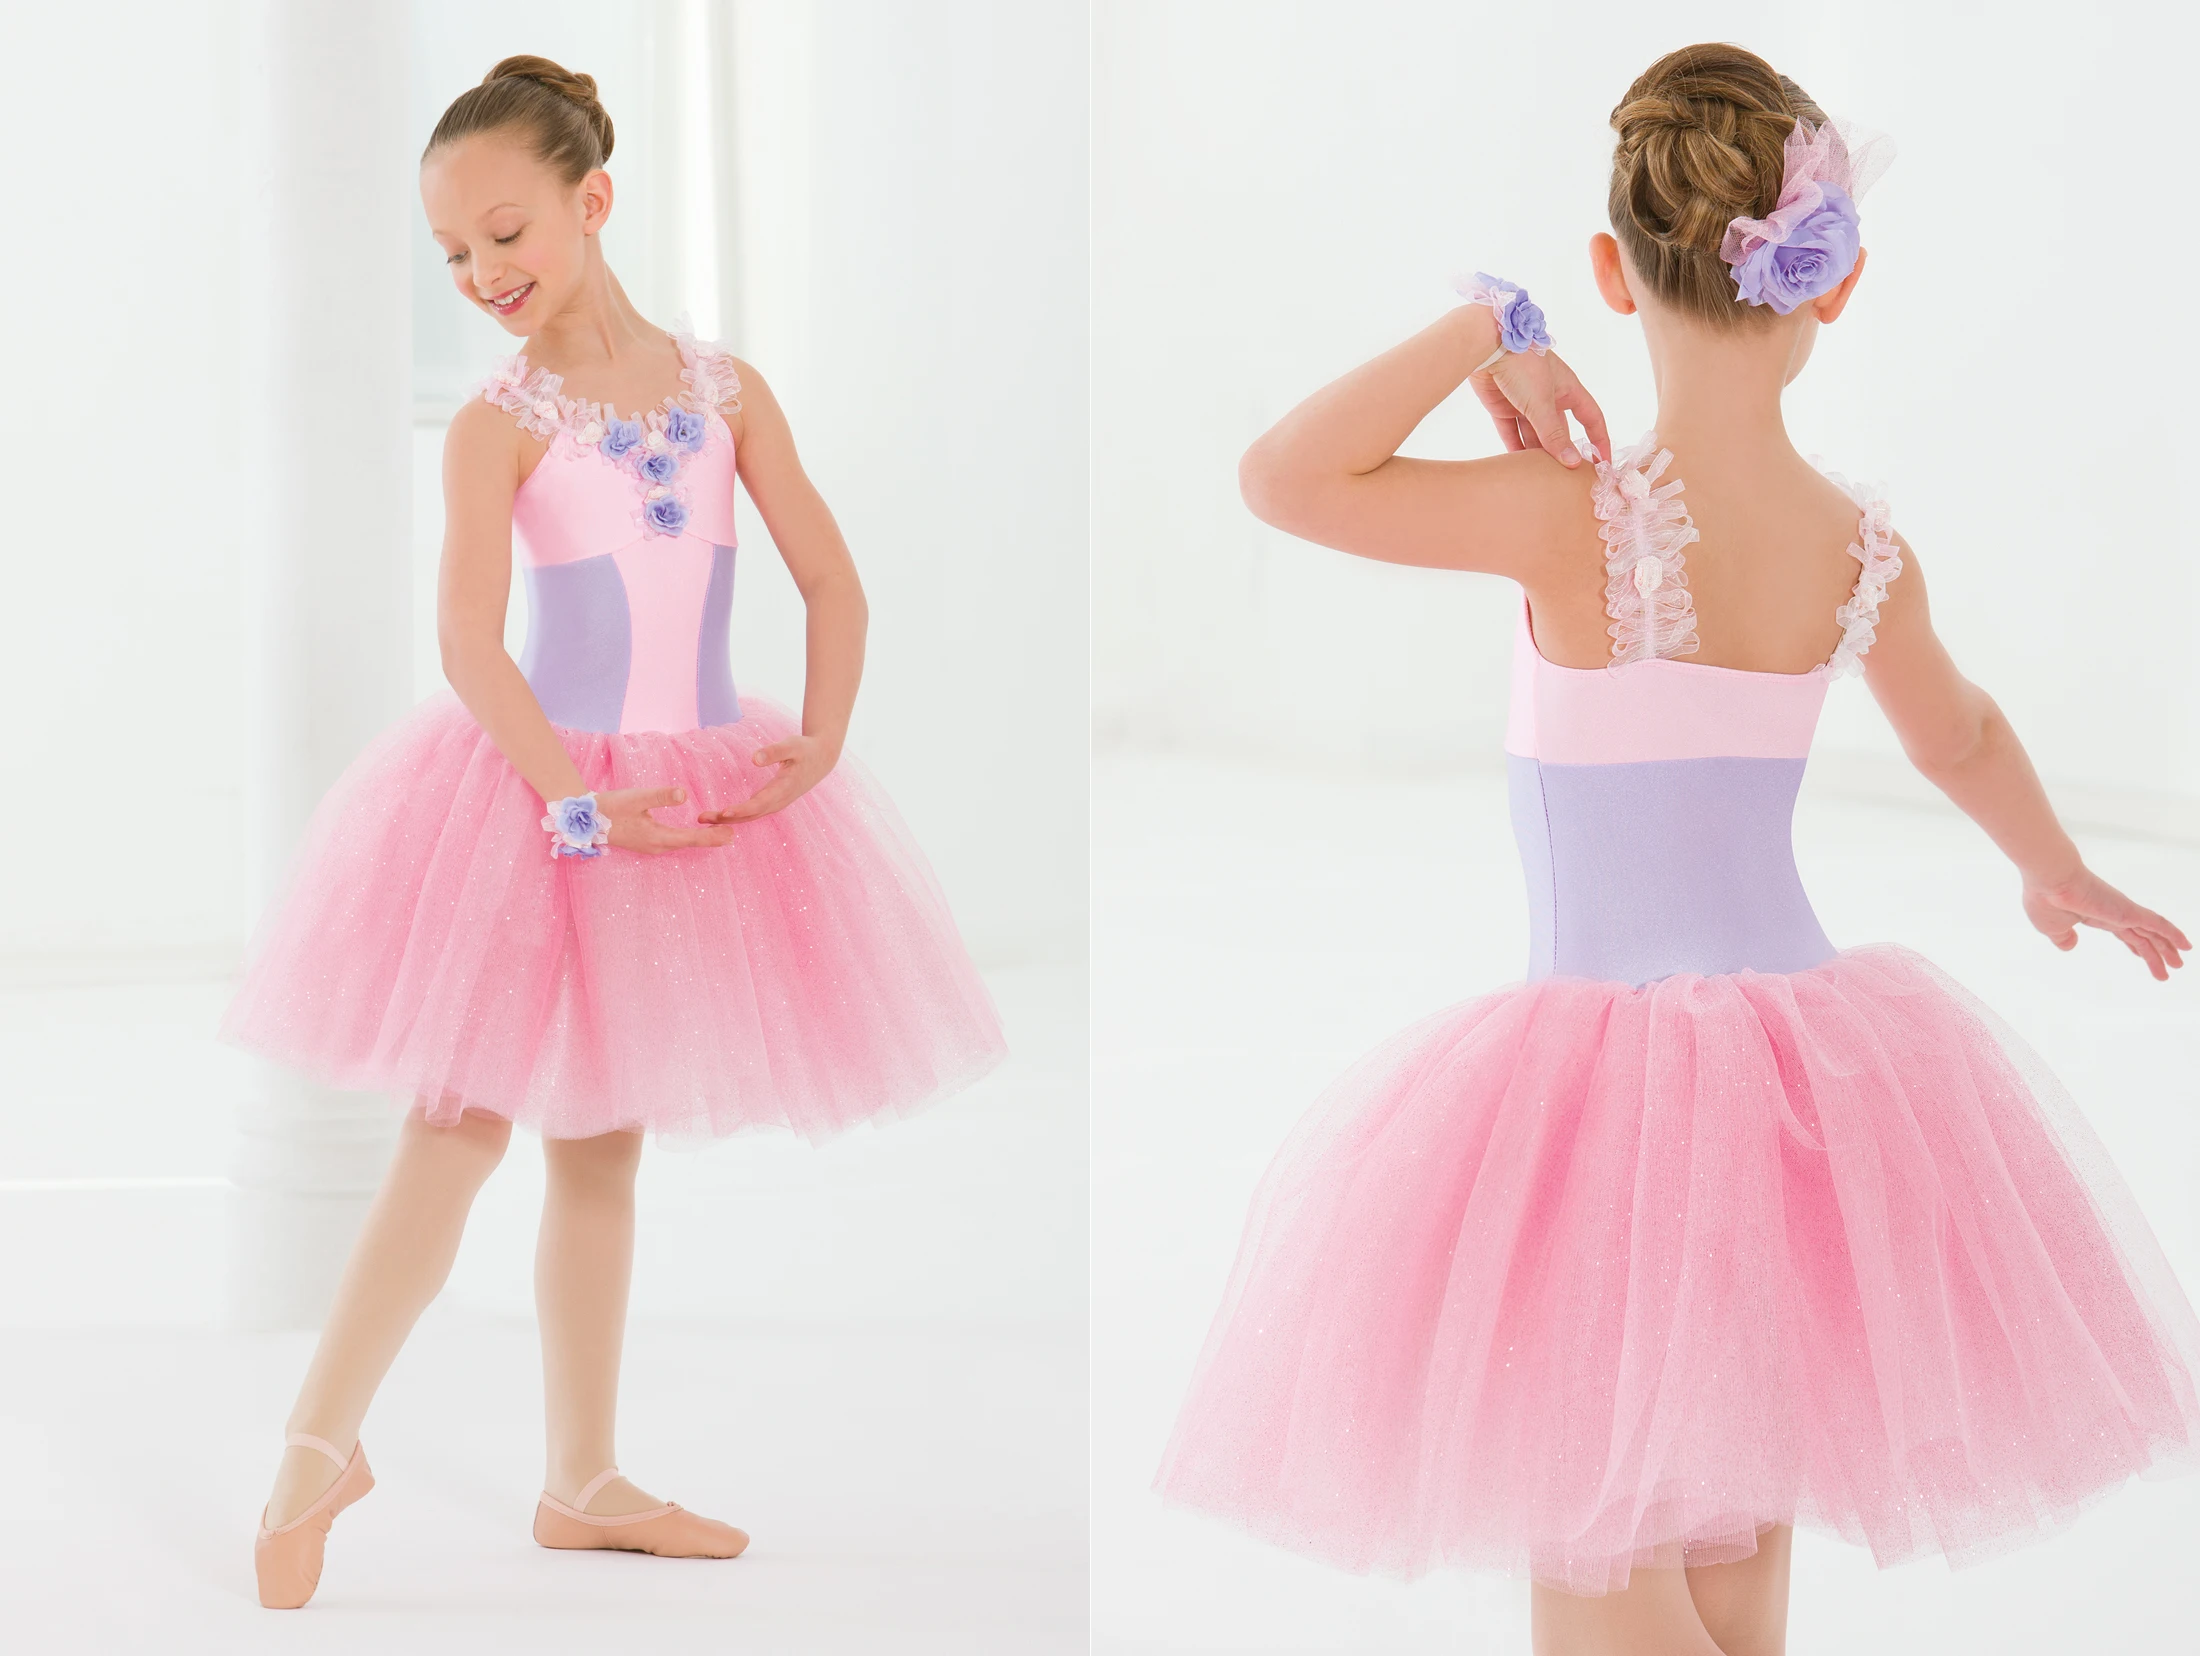 Ragazze Debutto Peformance Fata Danza Tutu di Balletto del Bambino Vestito  Ballerina di Danza Costume rosa Tutu Per I Bambini BL0136|Danza| -  AliExpress